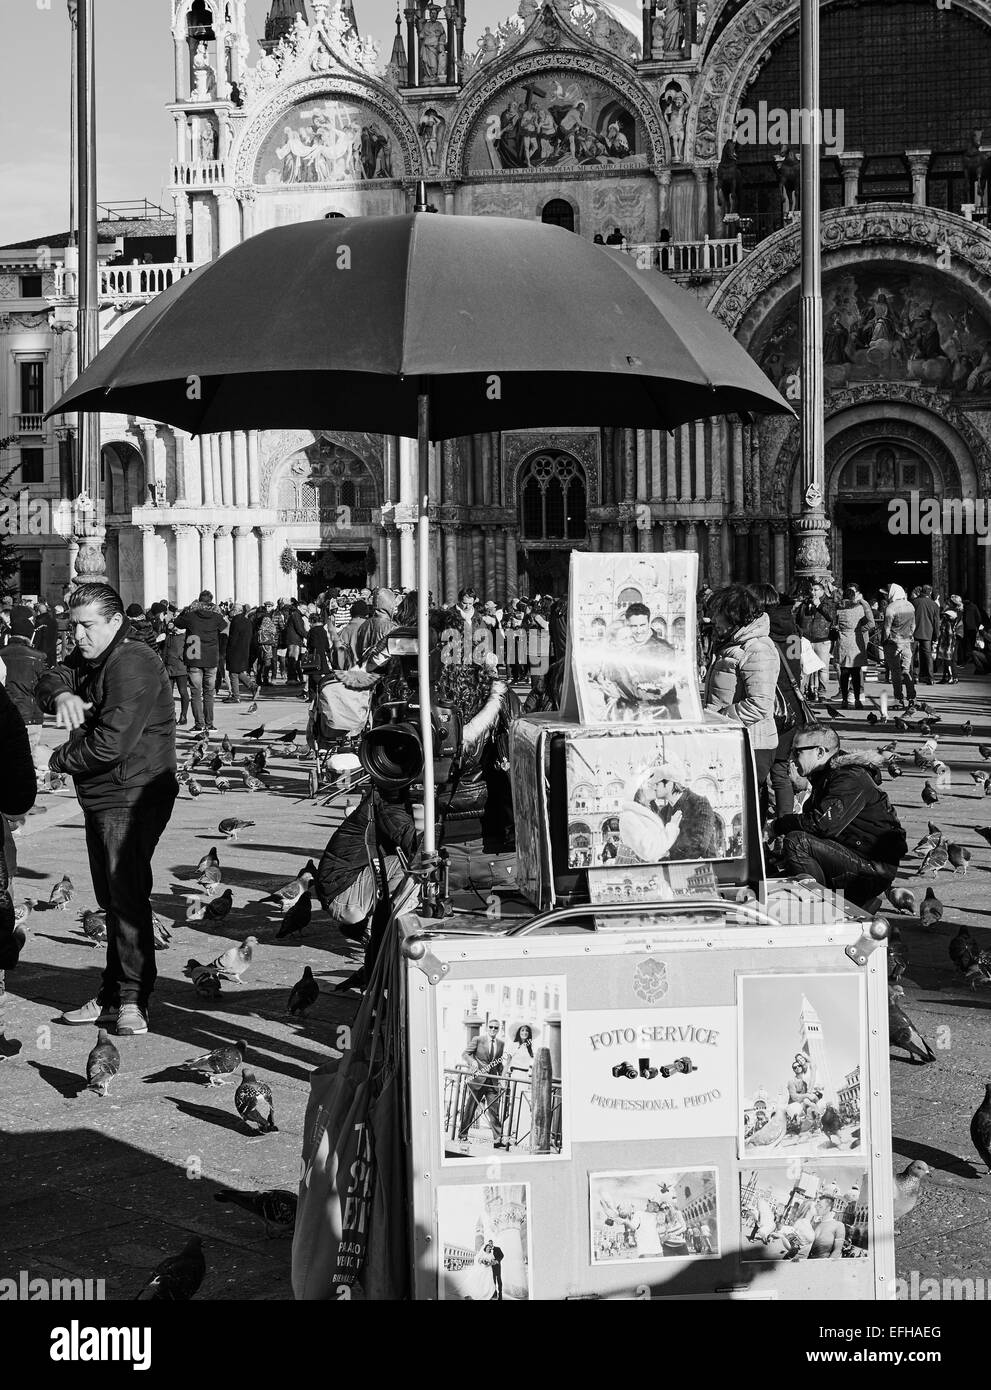 Service de photo professionnel pour les touristes sur la Piazza San Marco Venise Vénétie Italie Europe Banque D'Images